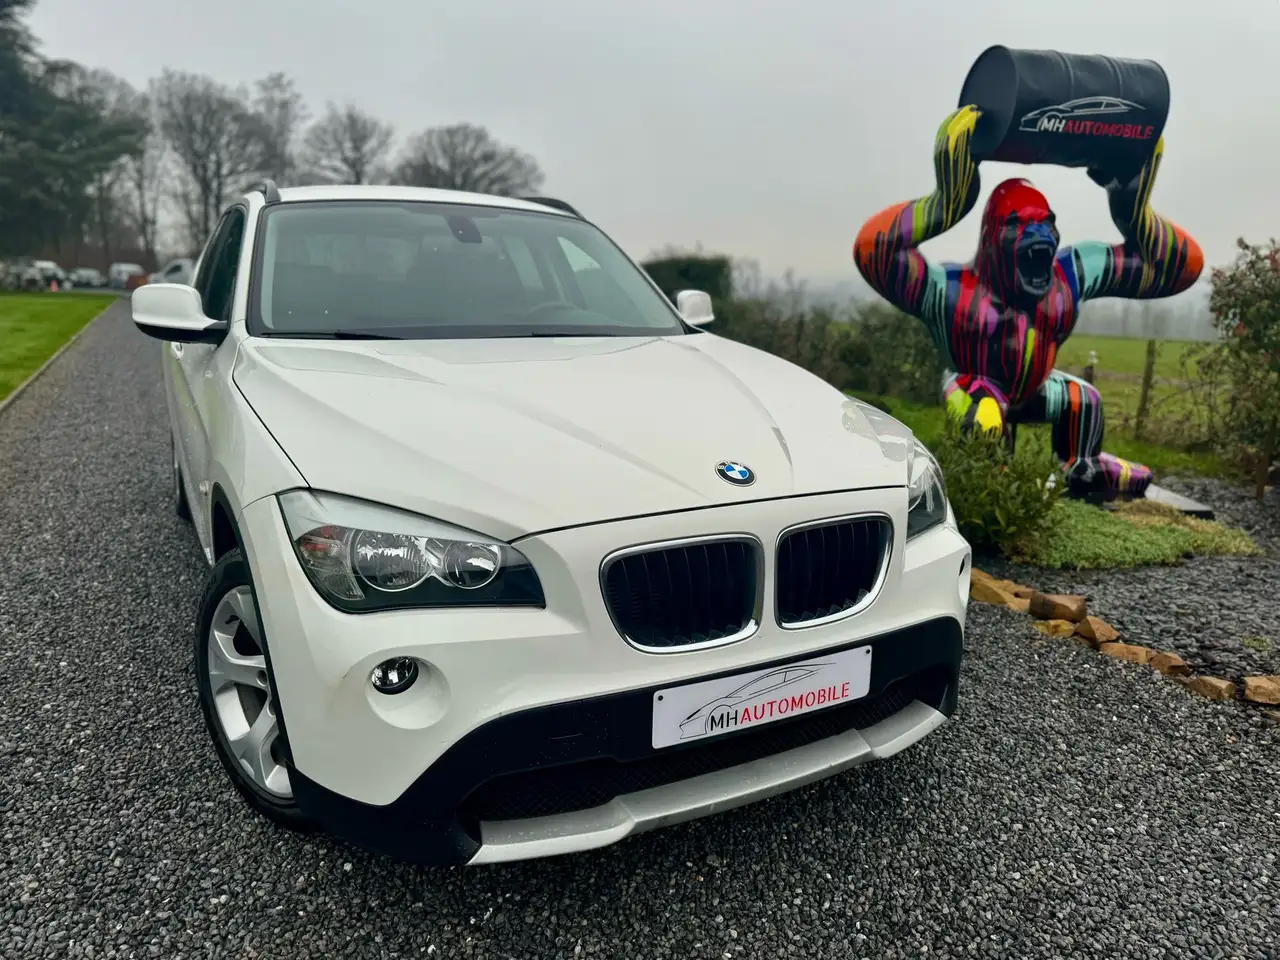 BMW X1 SUV/4x4/Pick-up in Wit tweedehands in Assesse (Namur) voor € 9.500,-